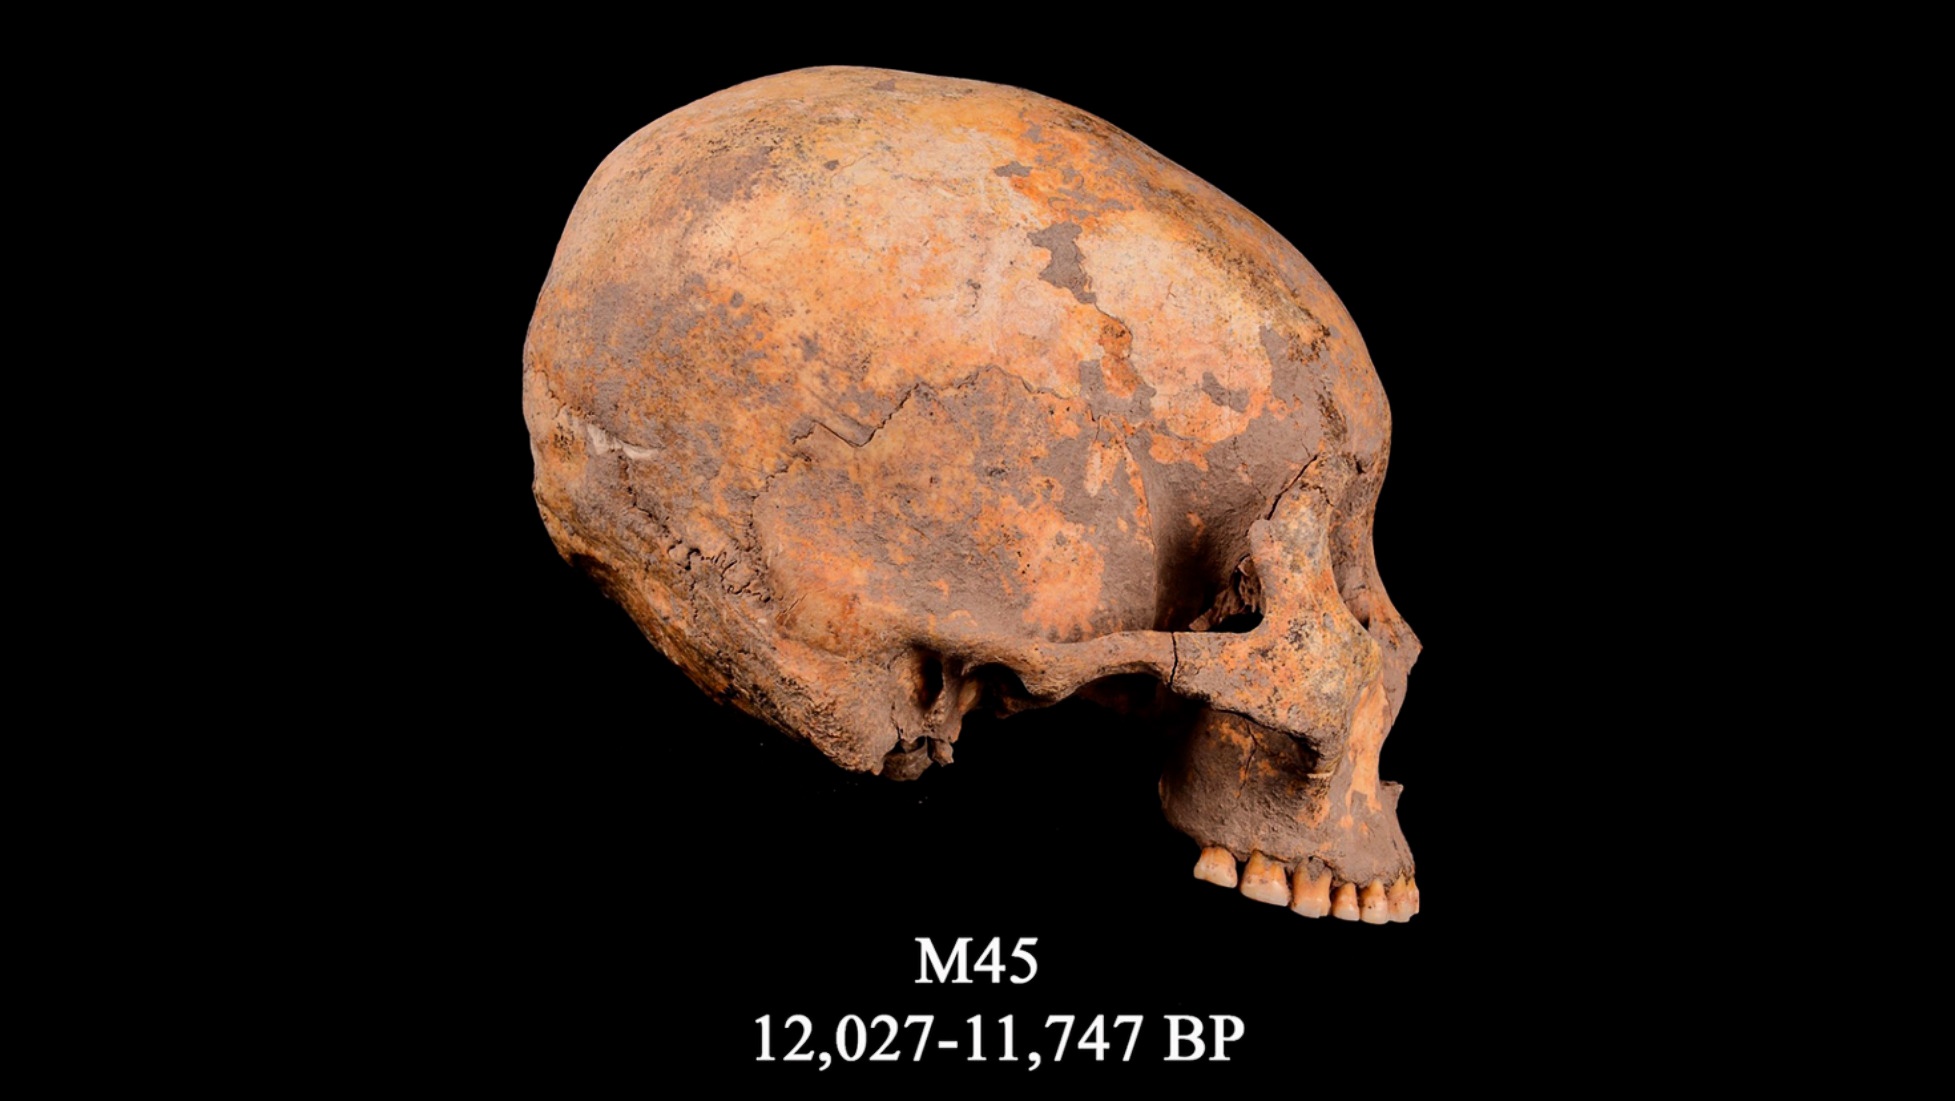 Az M45 néven ismert koponya, a fejmódosítás legkorábbi ismert esete. Körülbelül 12,000 XNUMX évvel ezelőttre datálható.